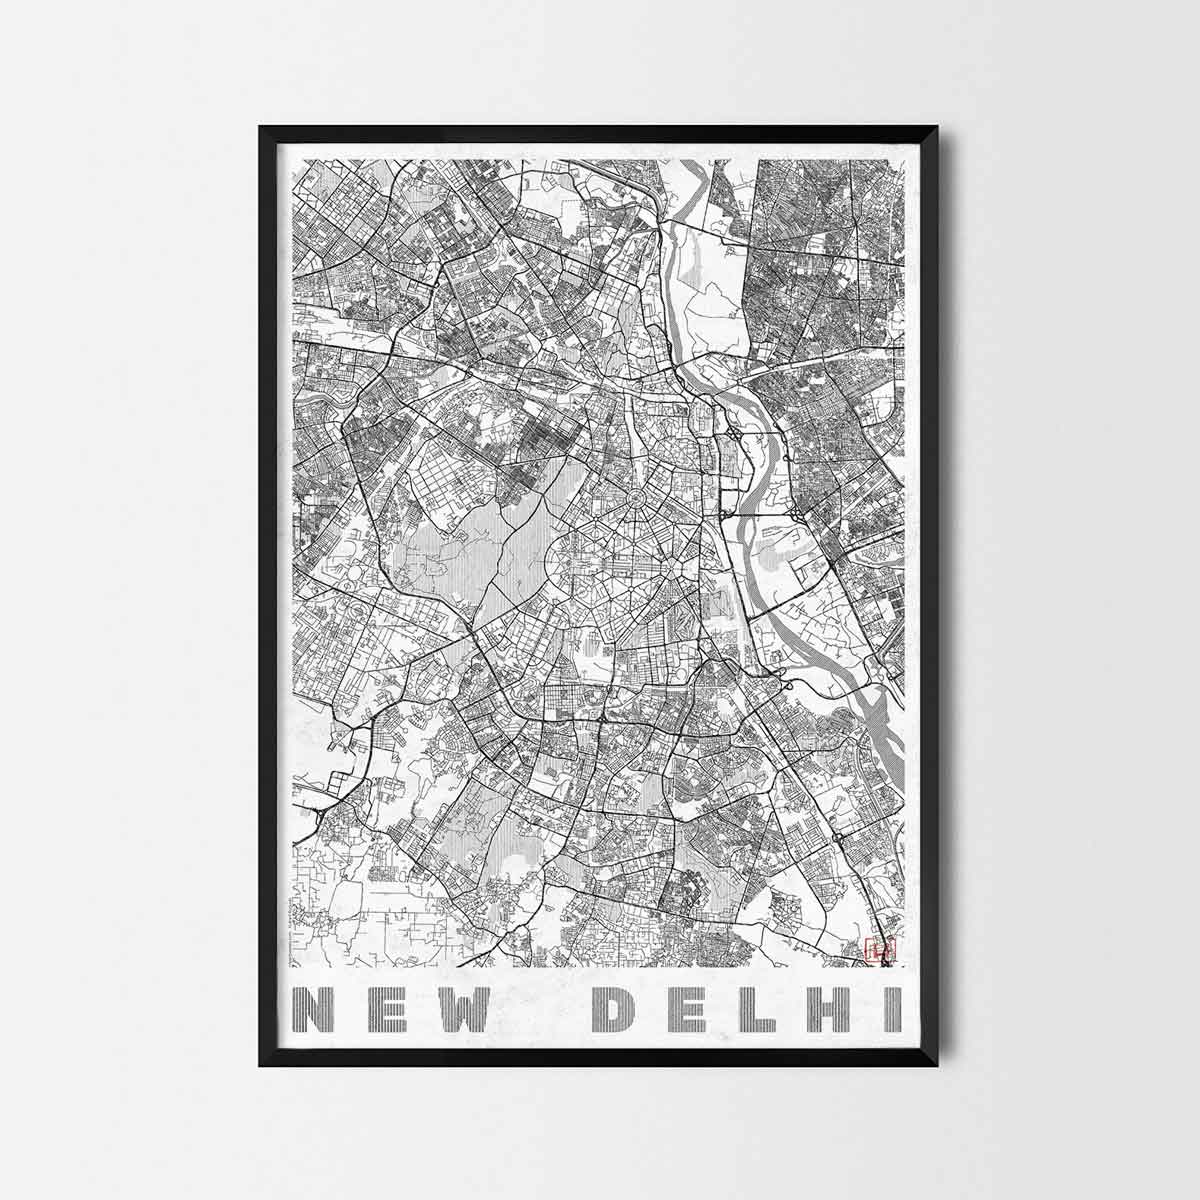 New Delhi art prints - City Art Posters and map prints